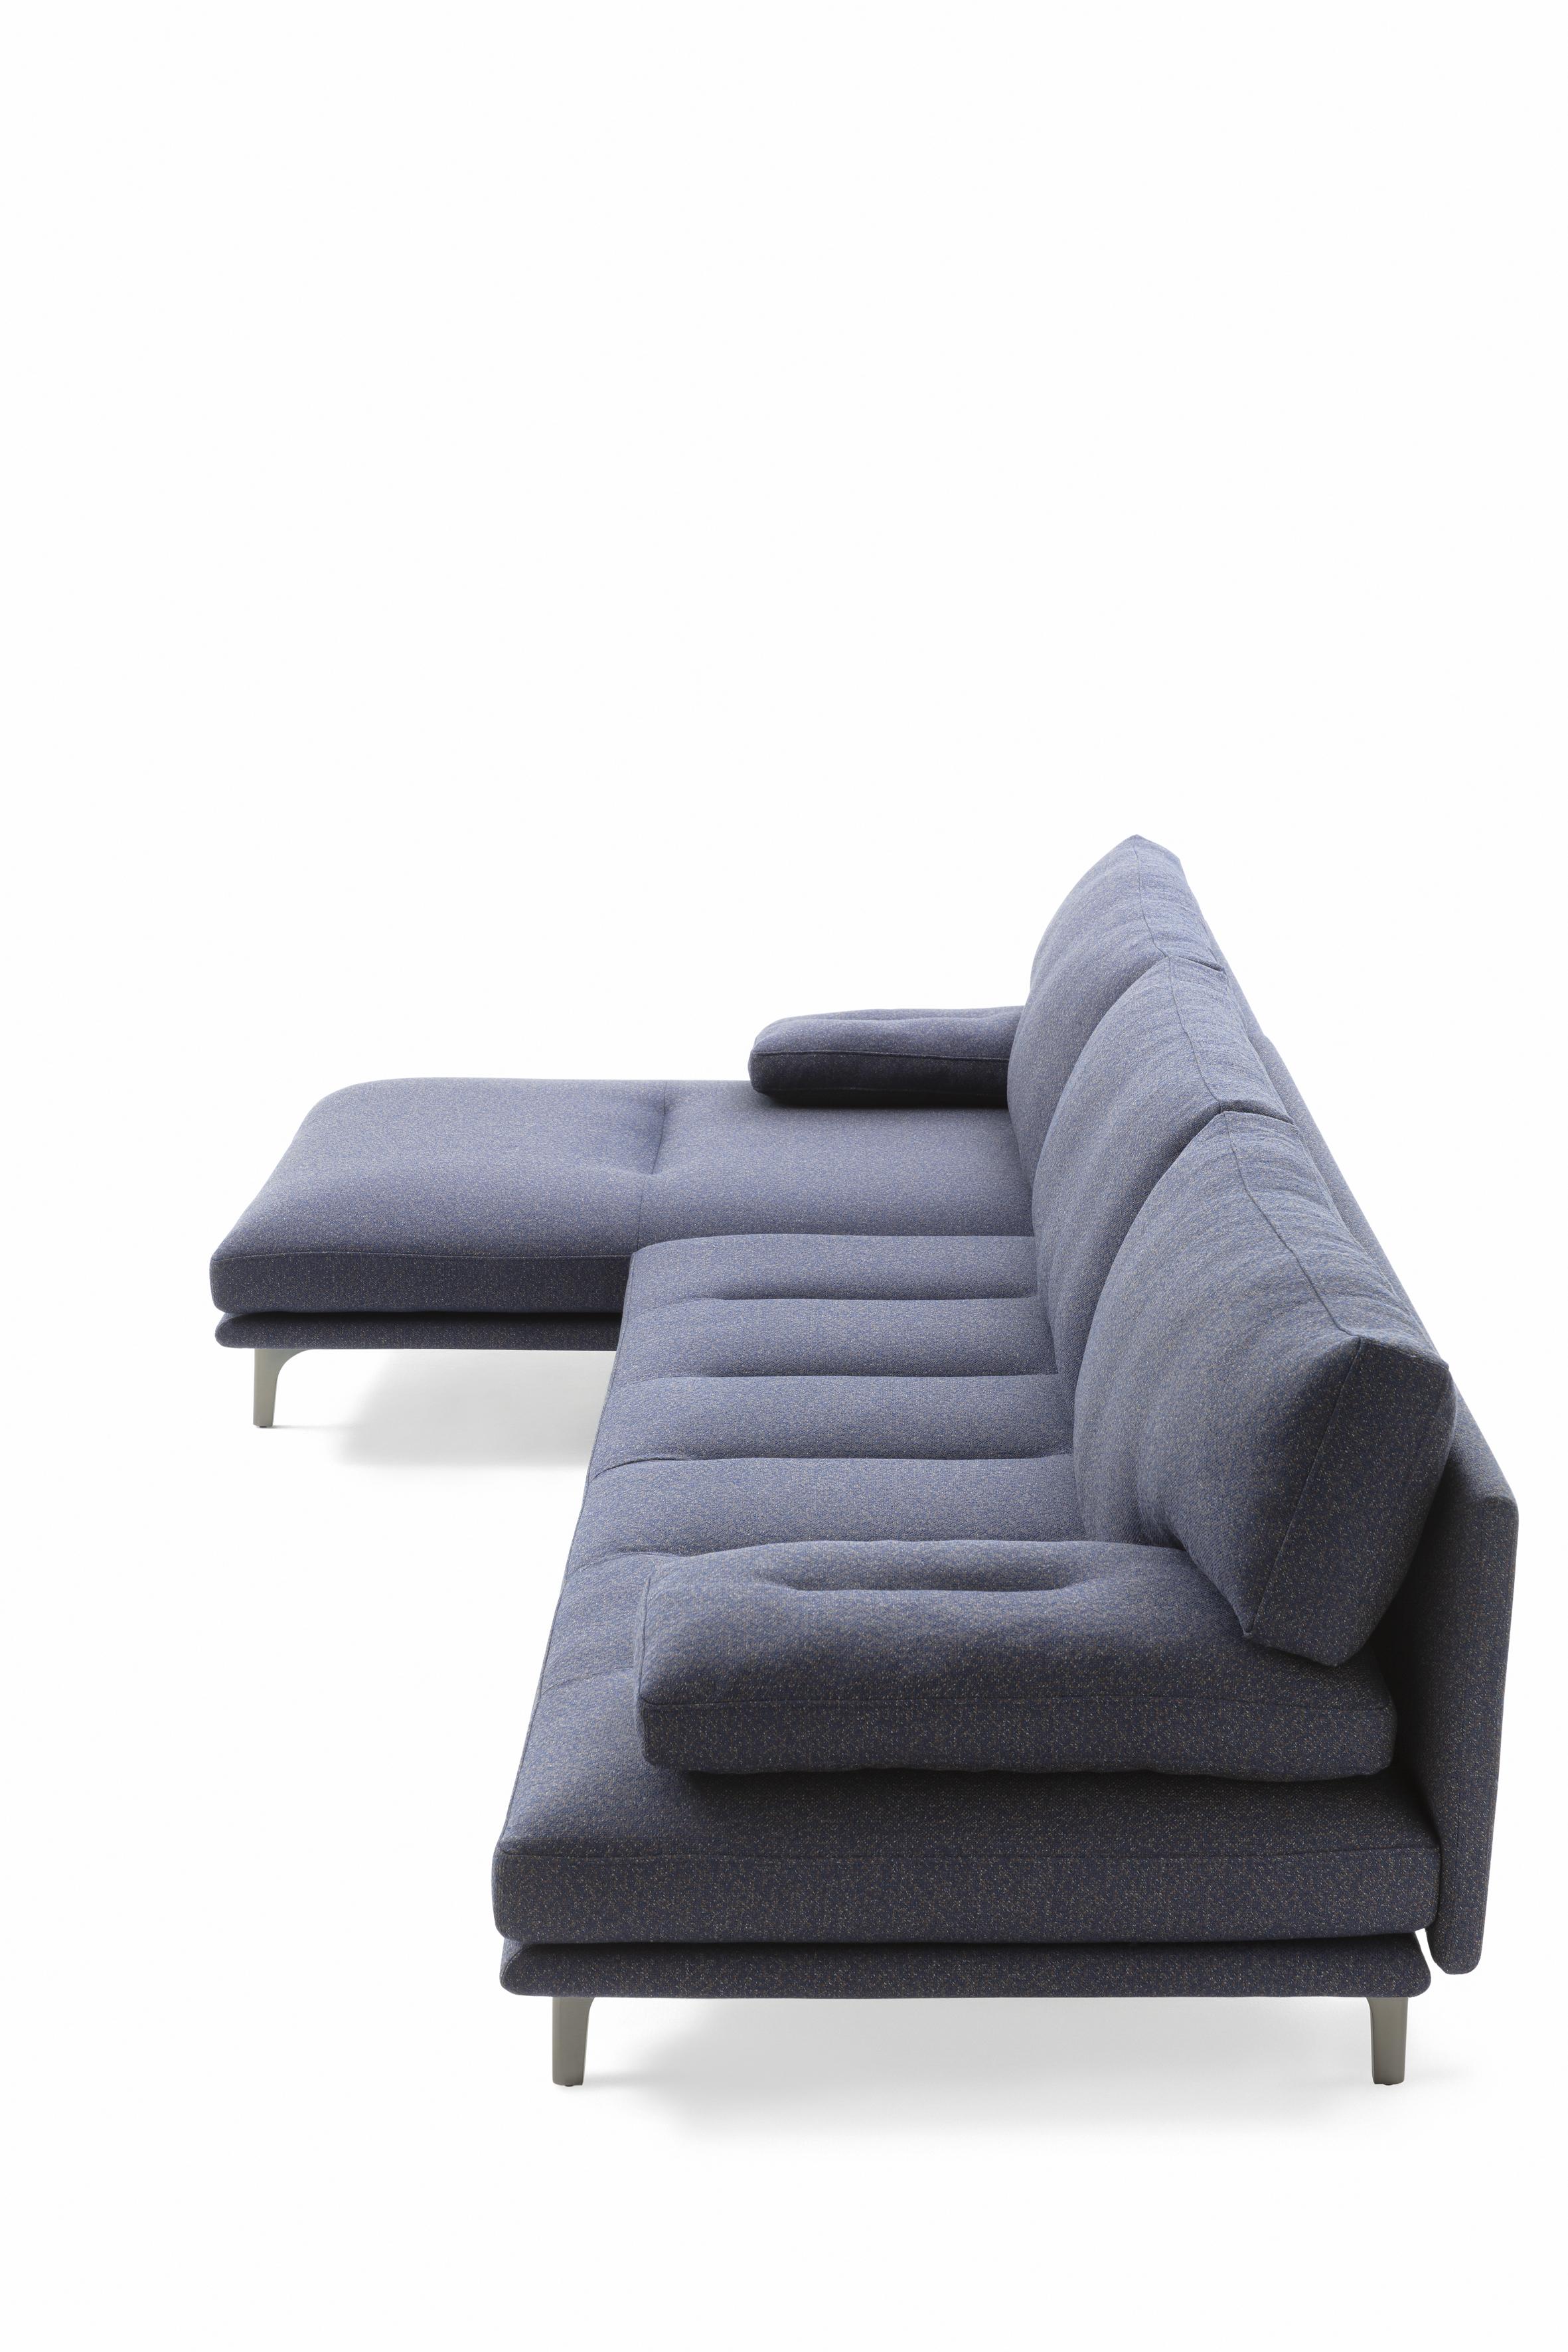 Customizable Zanotta Milano+ Sofa by De Pas, D'Urbino, Lomazzi  In New Condition For Sale In New York, NY